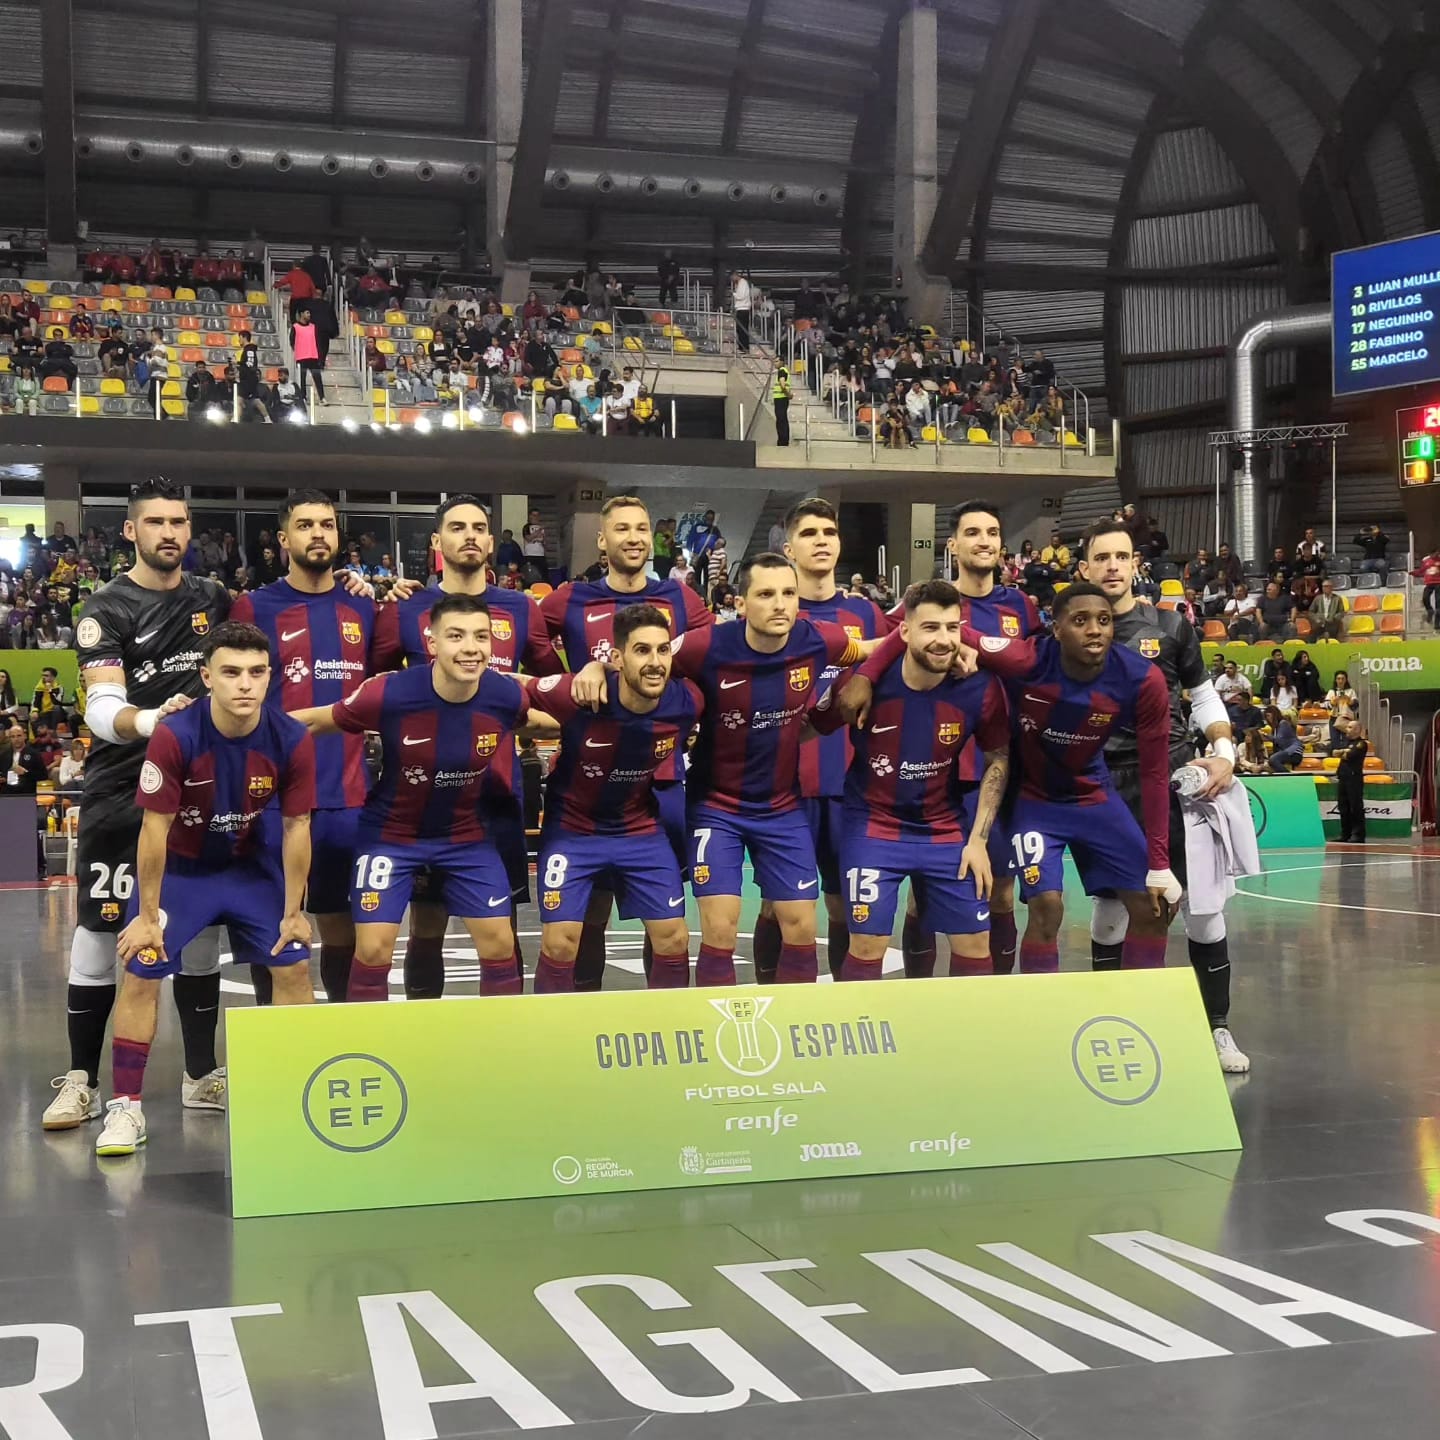 Los penaltis condenan al Mallorca Palma Futsal en la Copa de España (1-1)